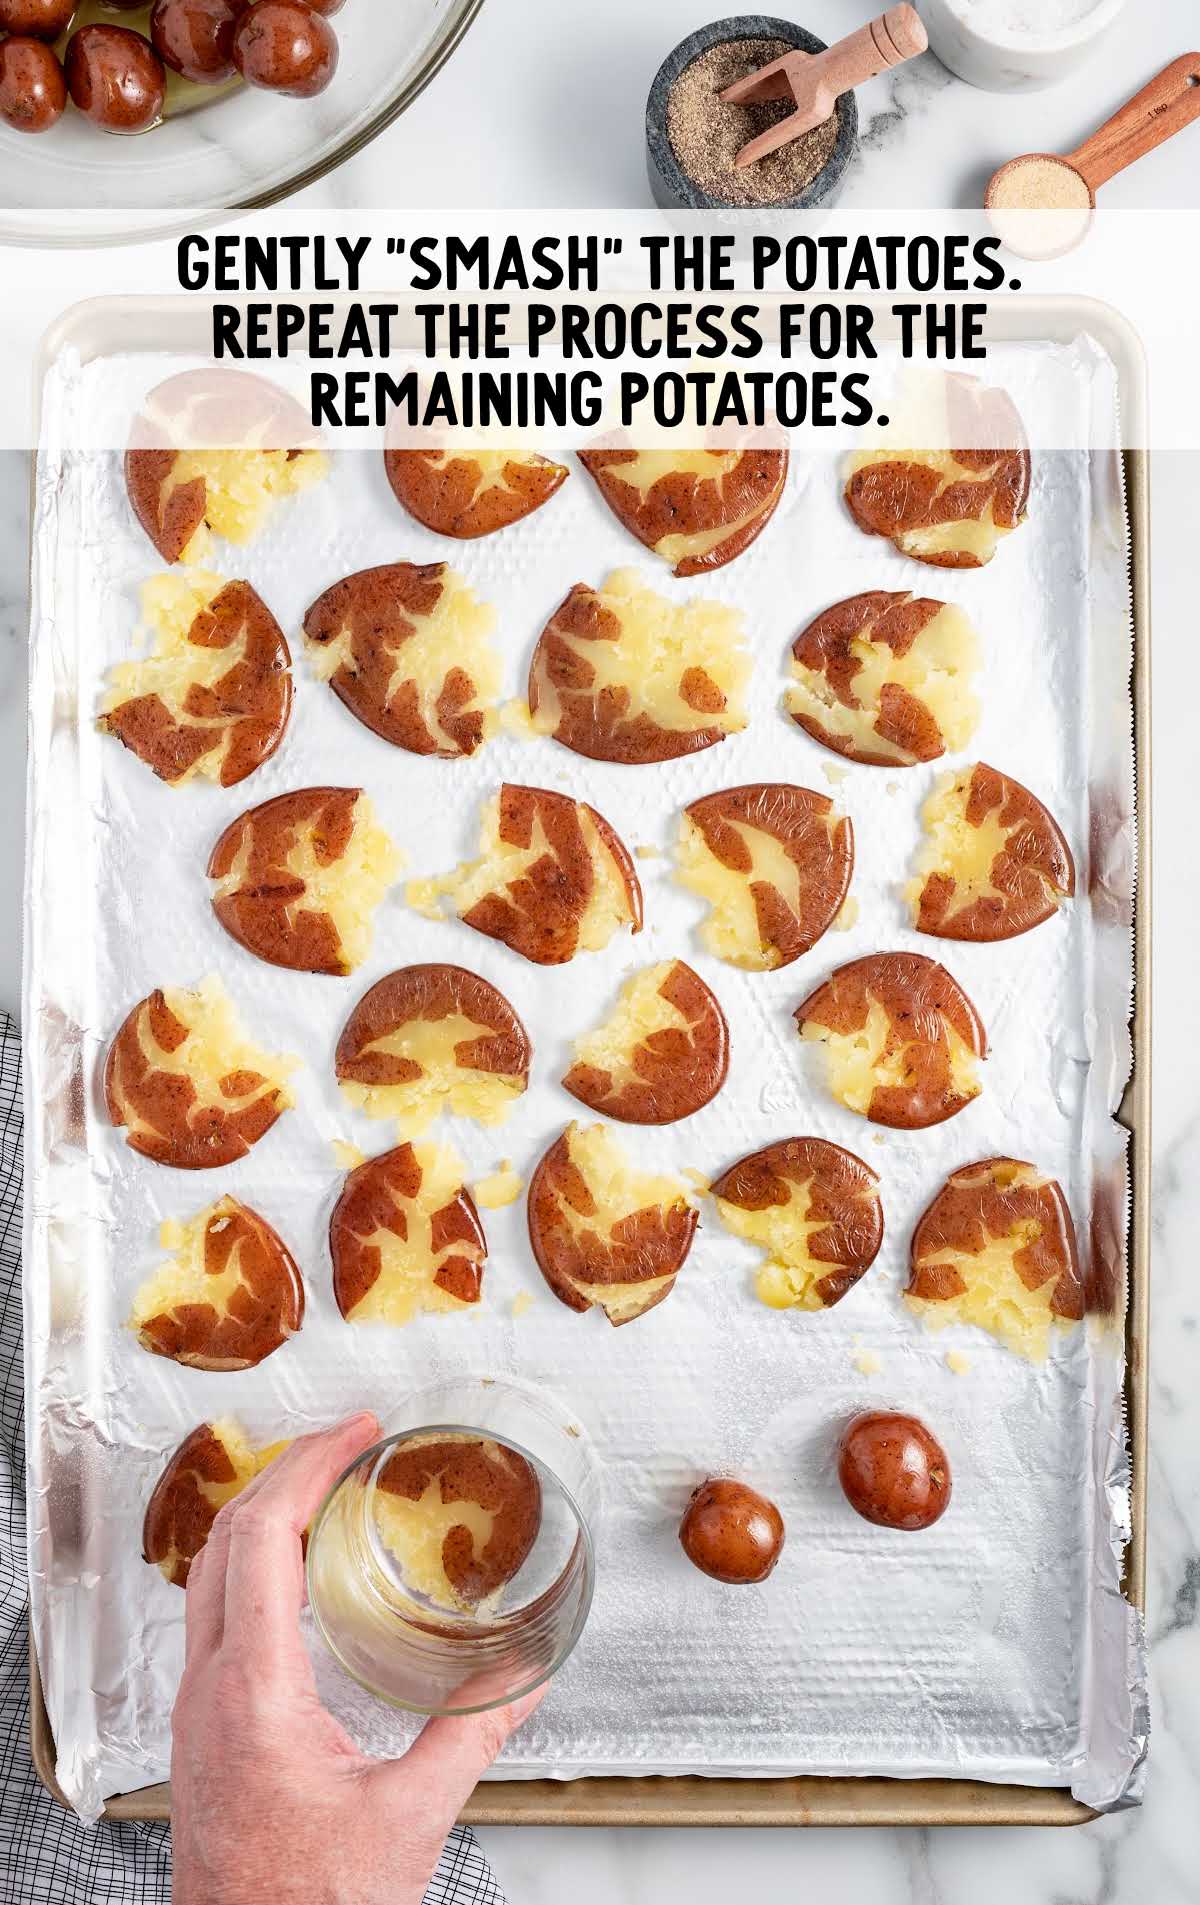 smash the potatoes gently